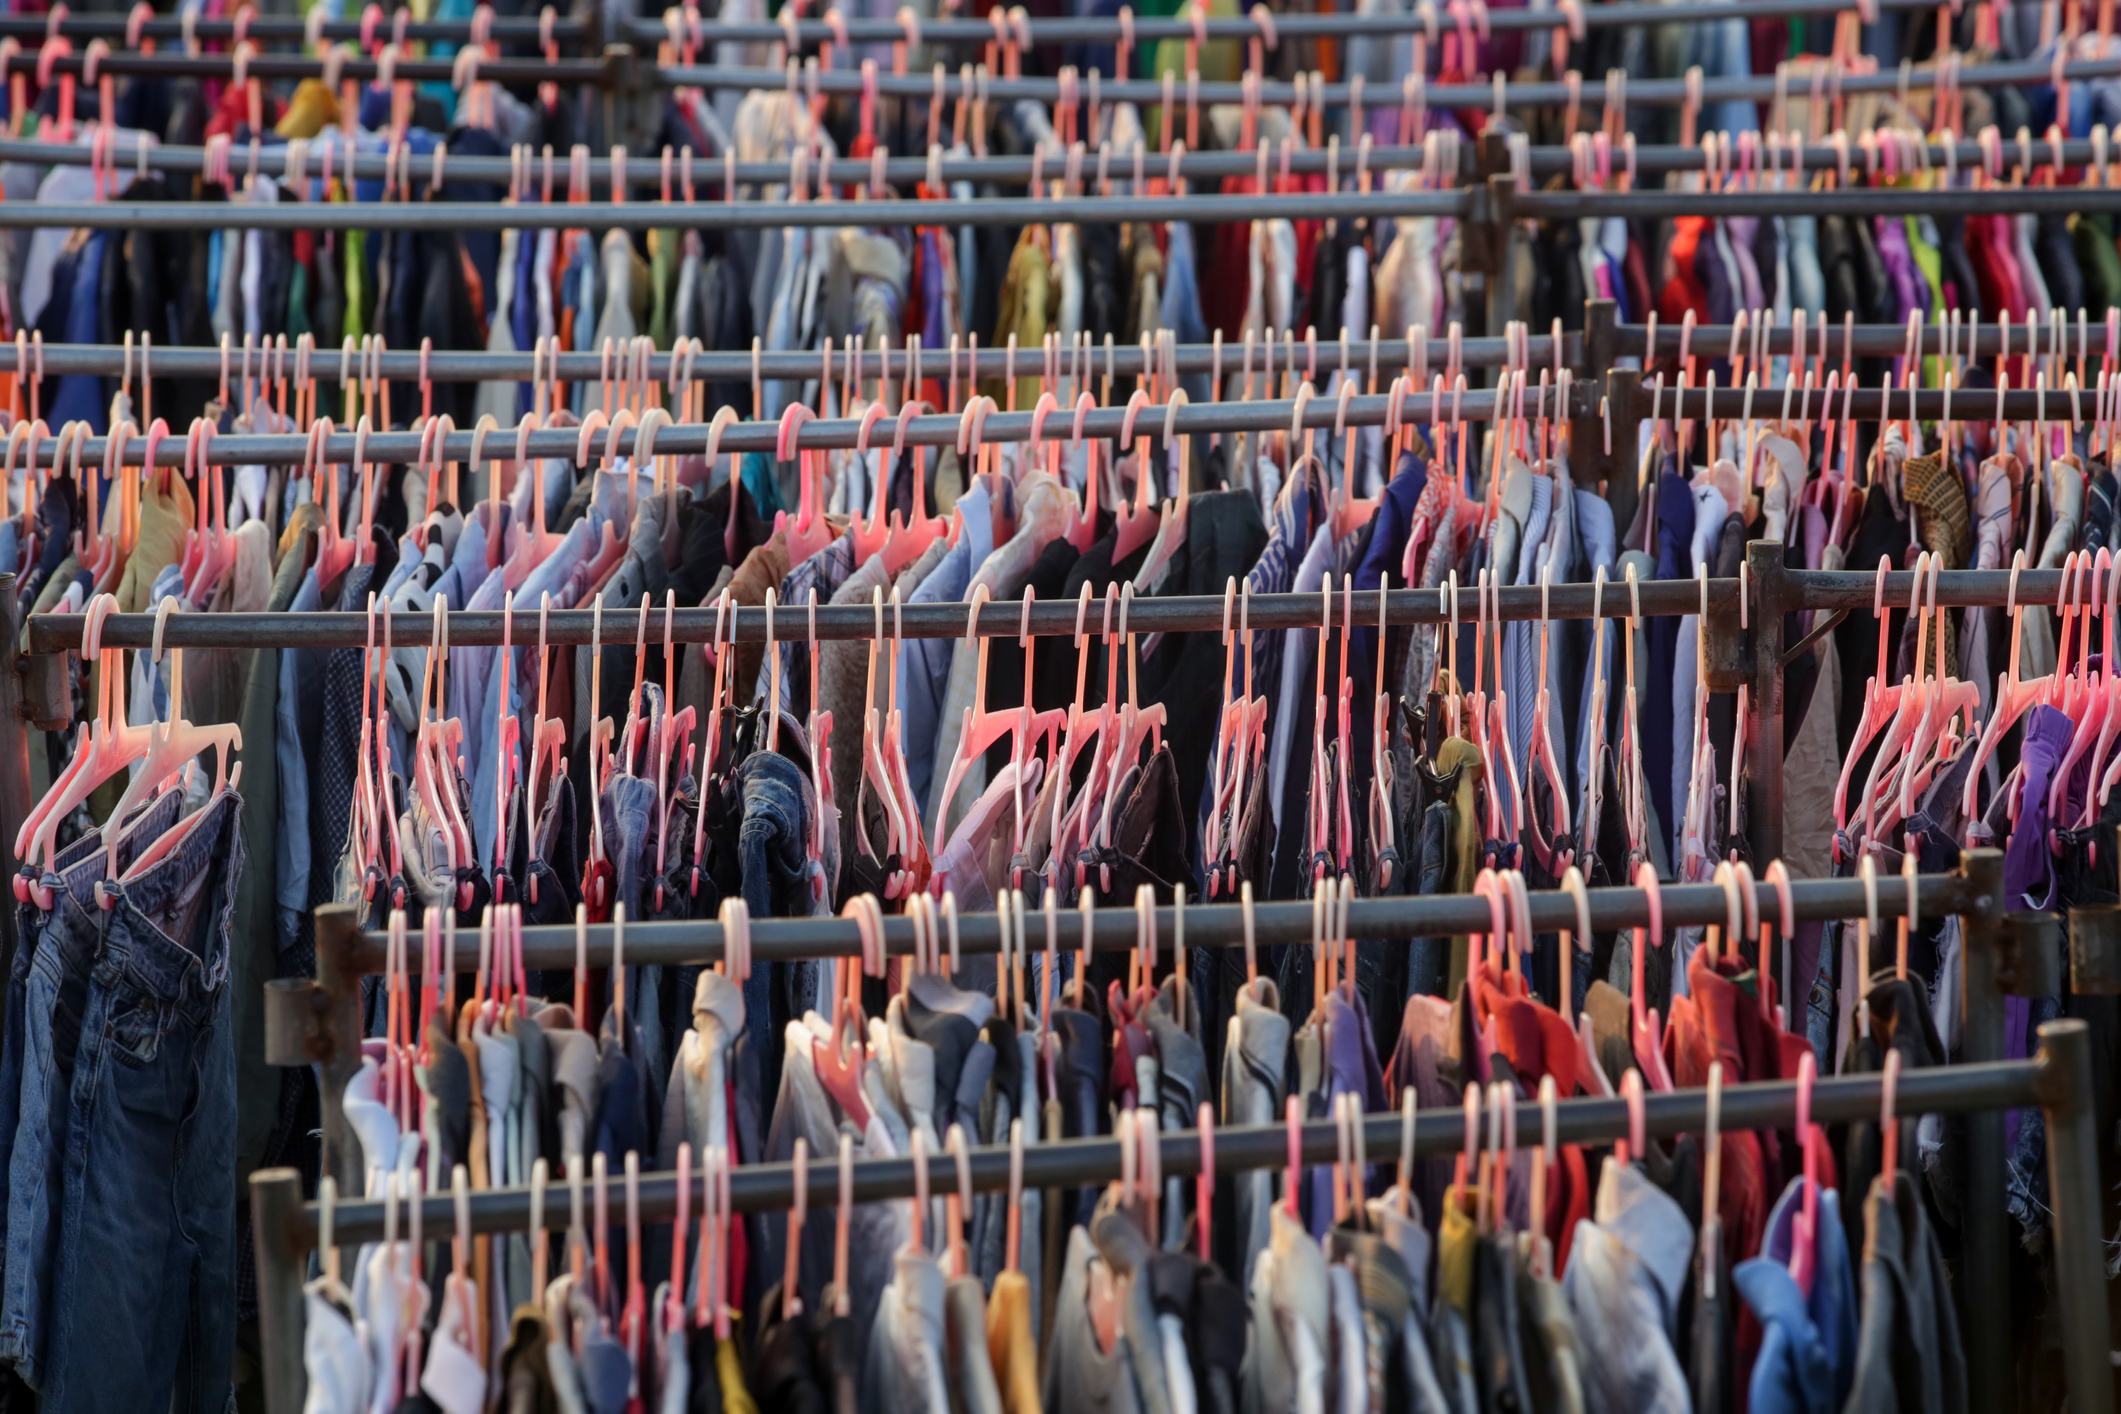 
Gran selección de diferentes prendas usadas para hombres, mujeres y niños en el estante de una tienda de segunda mano o de segunda mano. Concepto de problema de residuos en la industria de la moda.